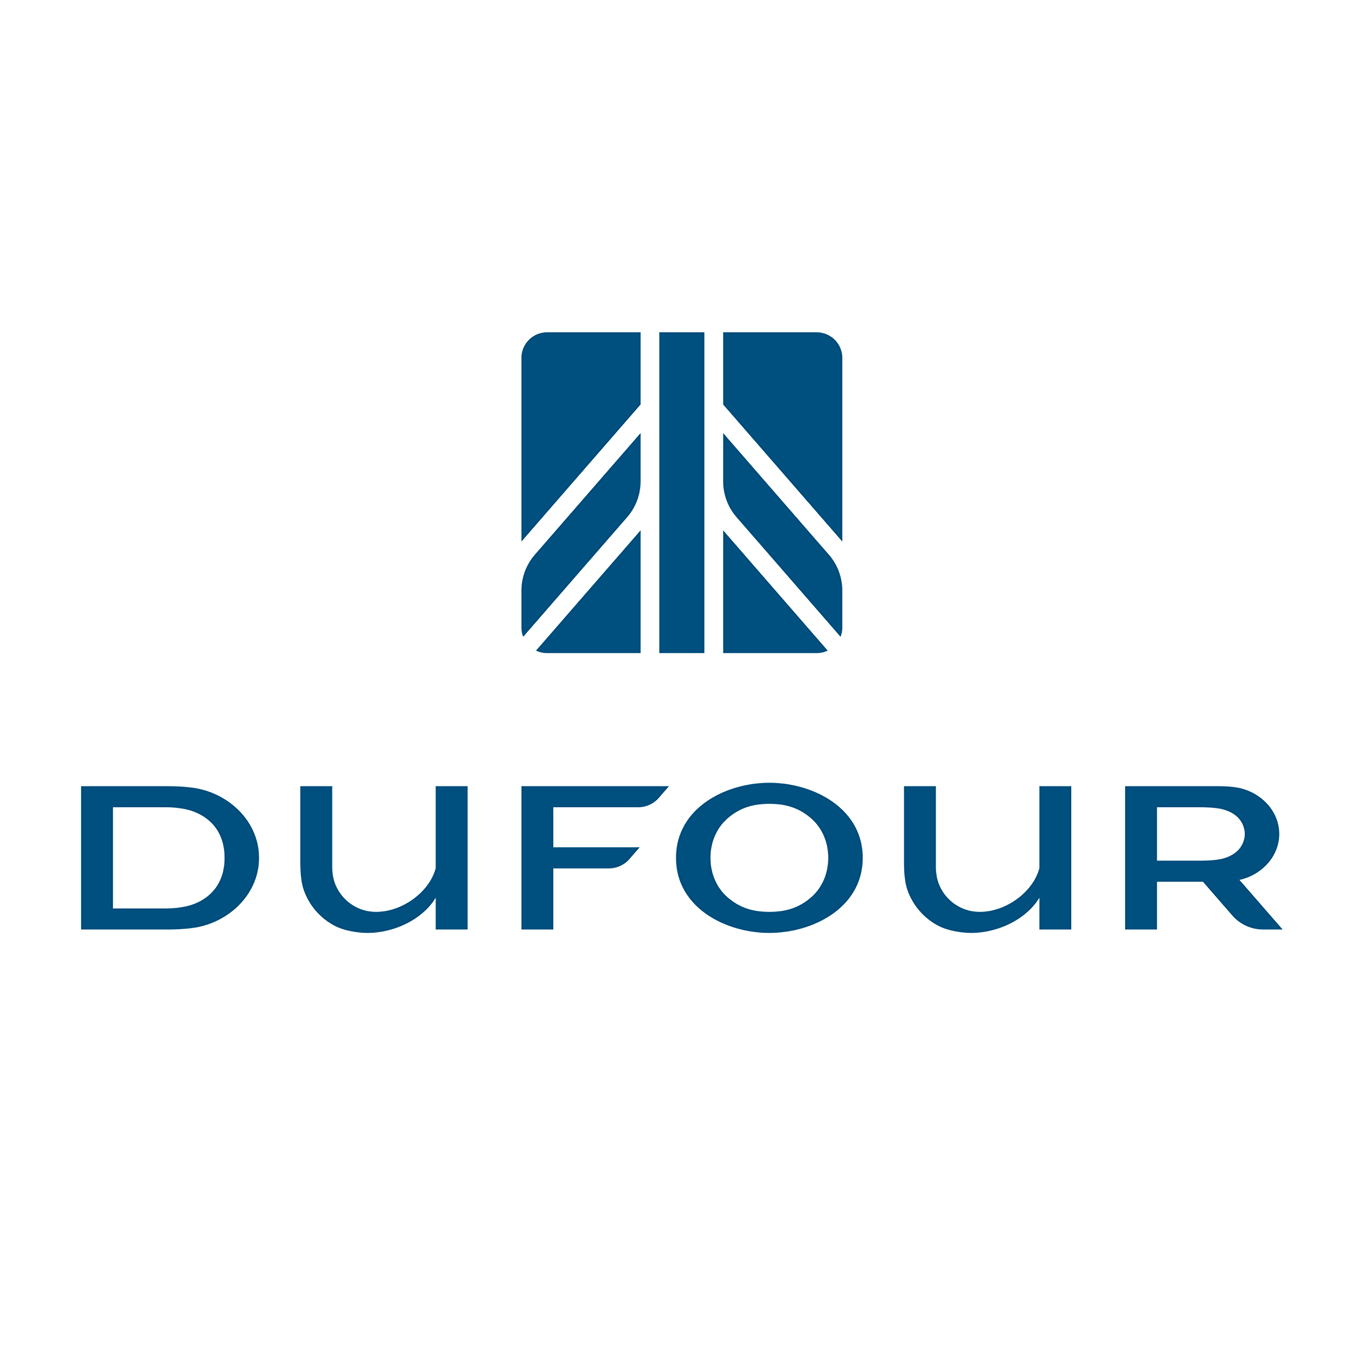 Dufour logo